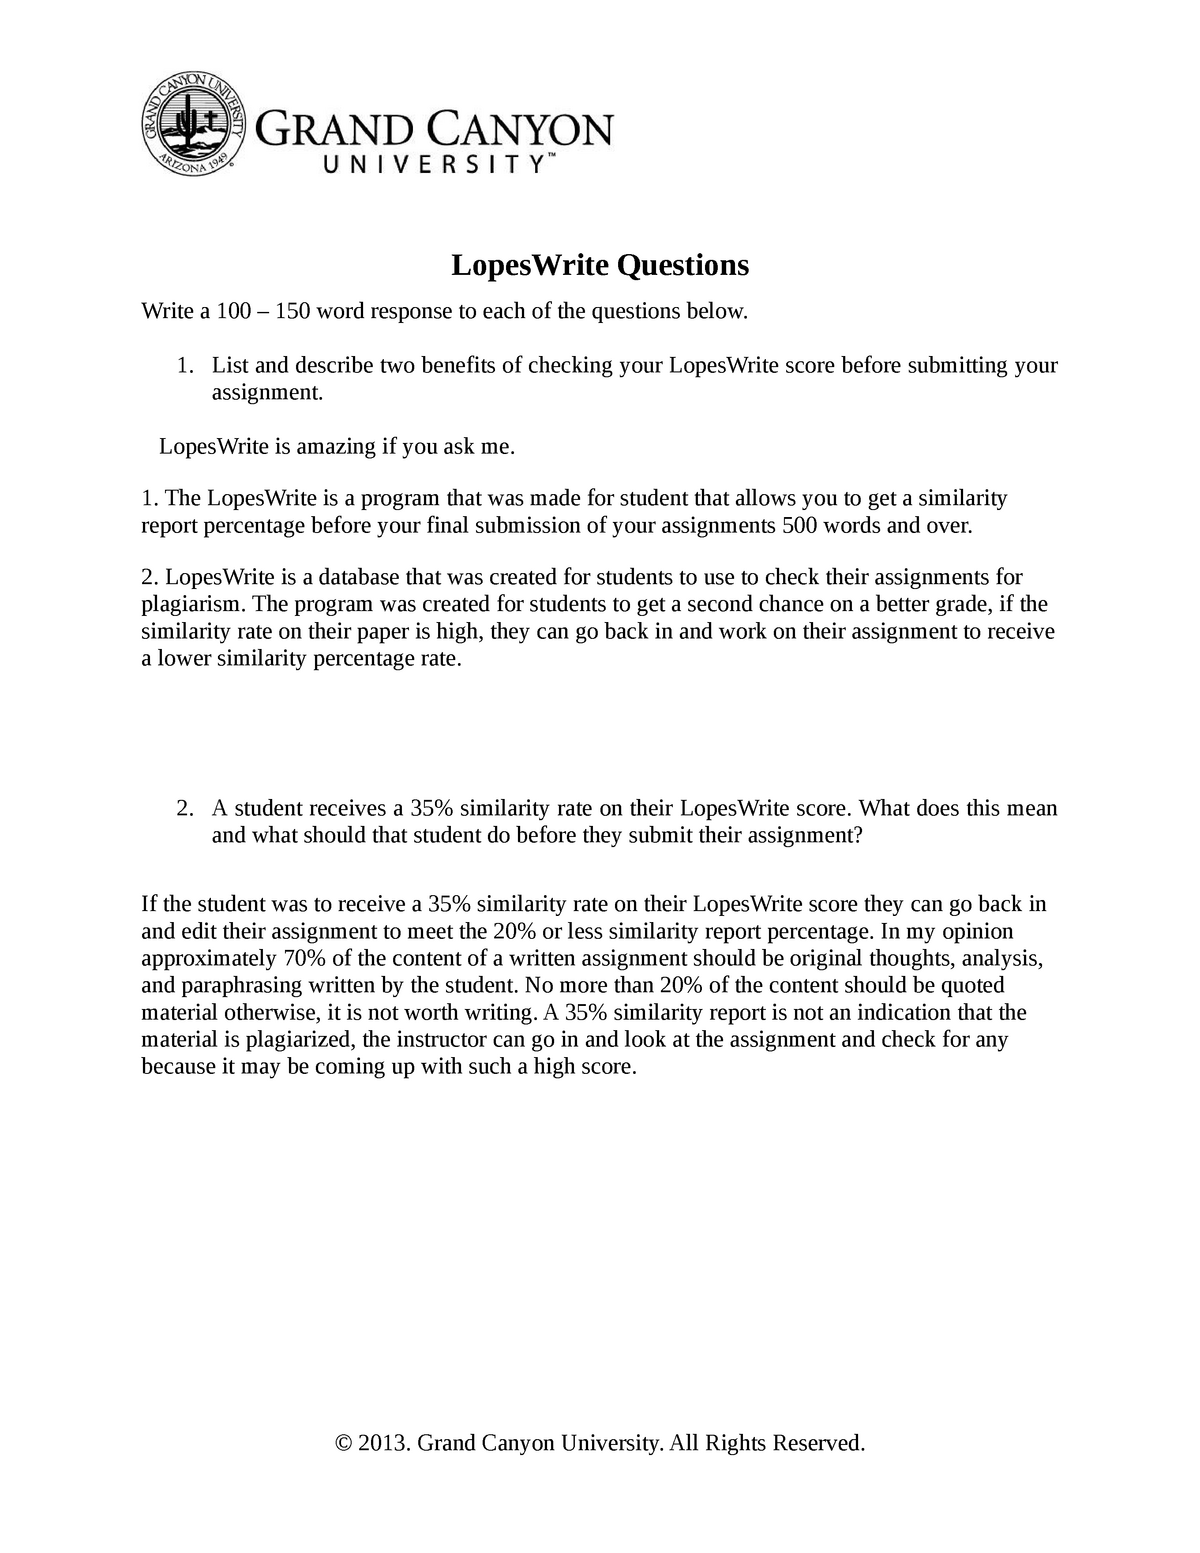 Lopes Write Questions - LopesWrite Questions Write a 100 – 150 ...